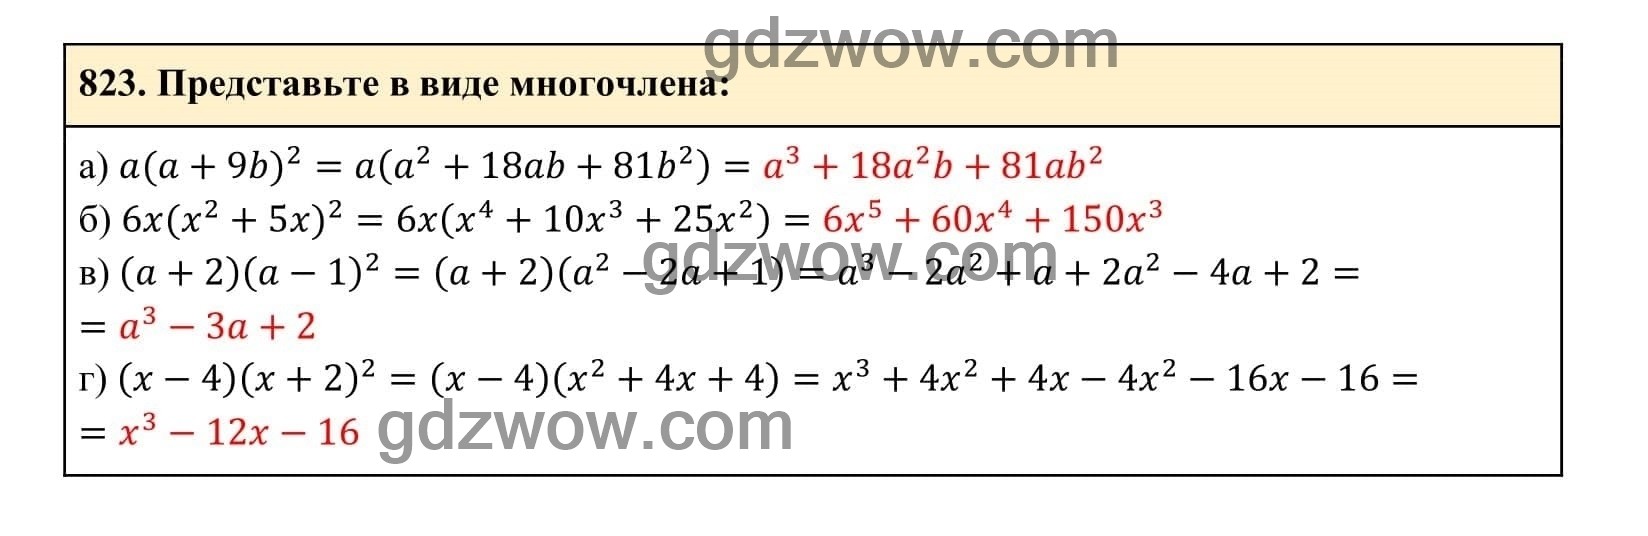 Упражнение 823 - ГДЗ по Алгебре 7 класс Учебник Макарычев (решебник) - GDZwow